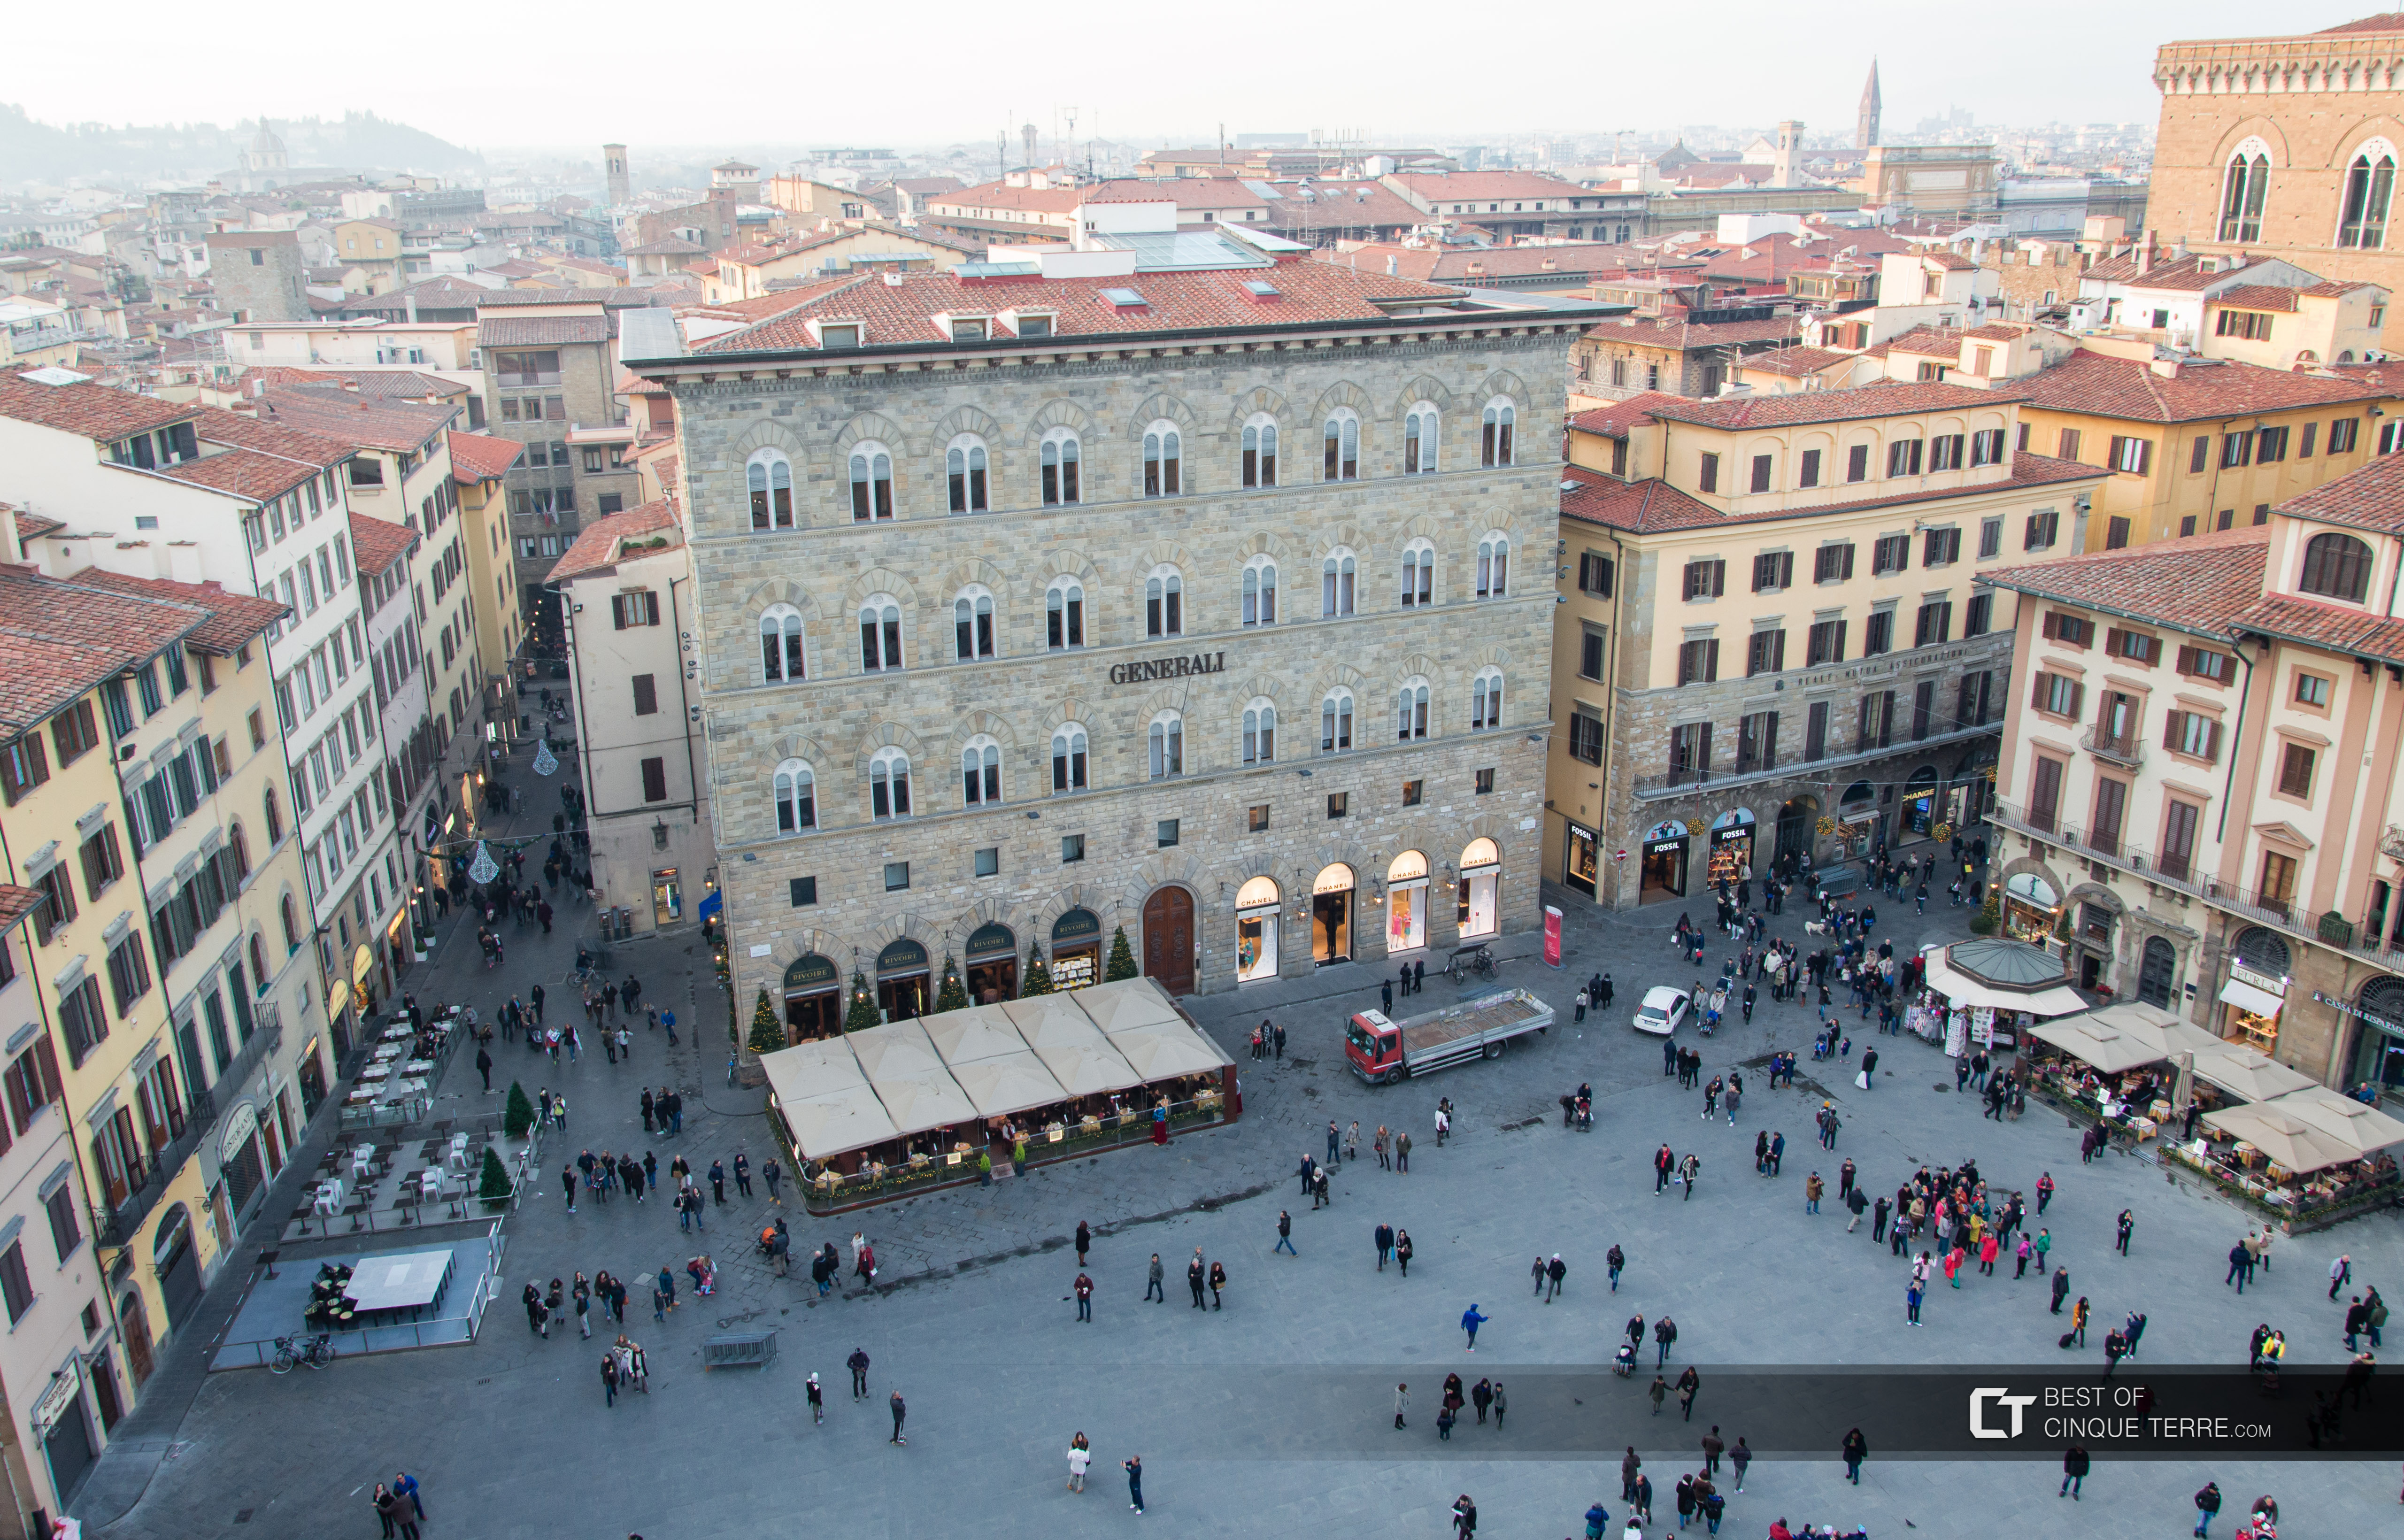 Piața Signoria, vedere de pe turnul Palazzo Vecchio (Palatului Vechi), Florența, Italia